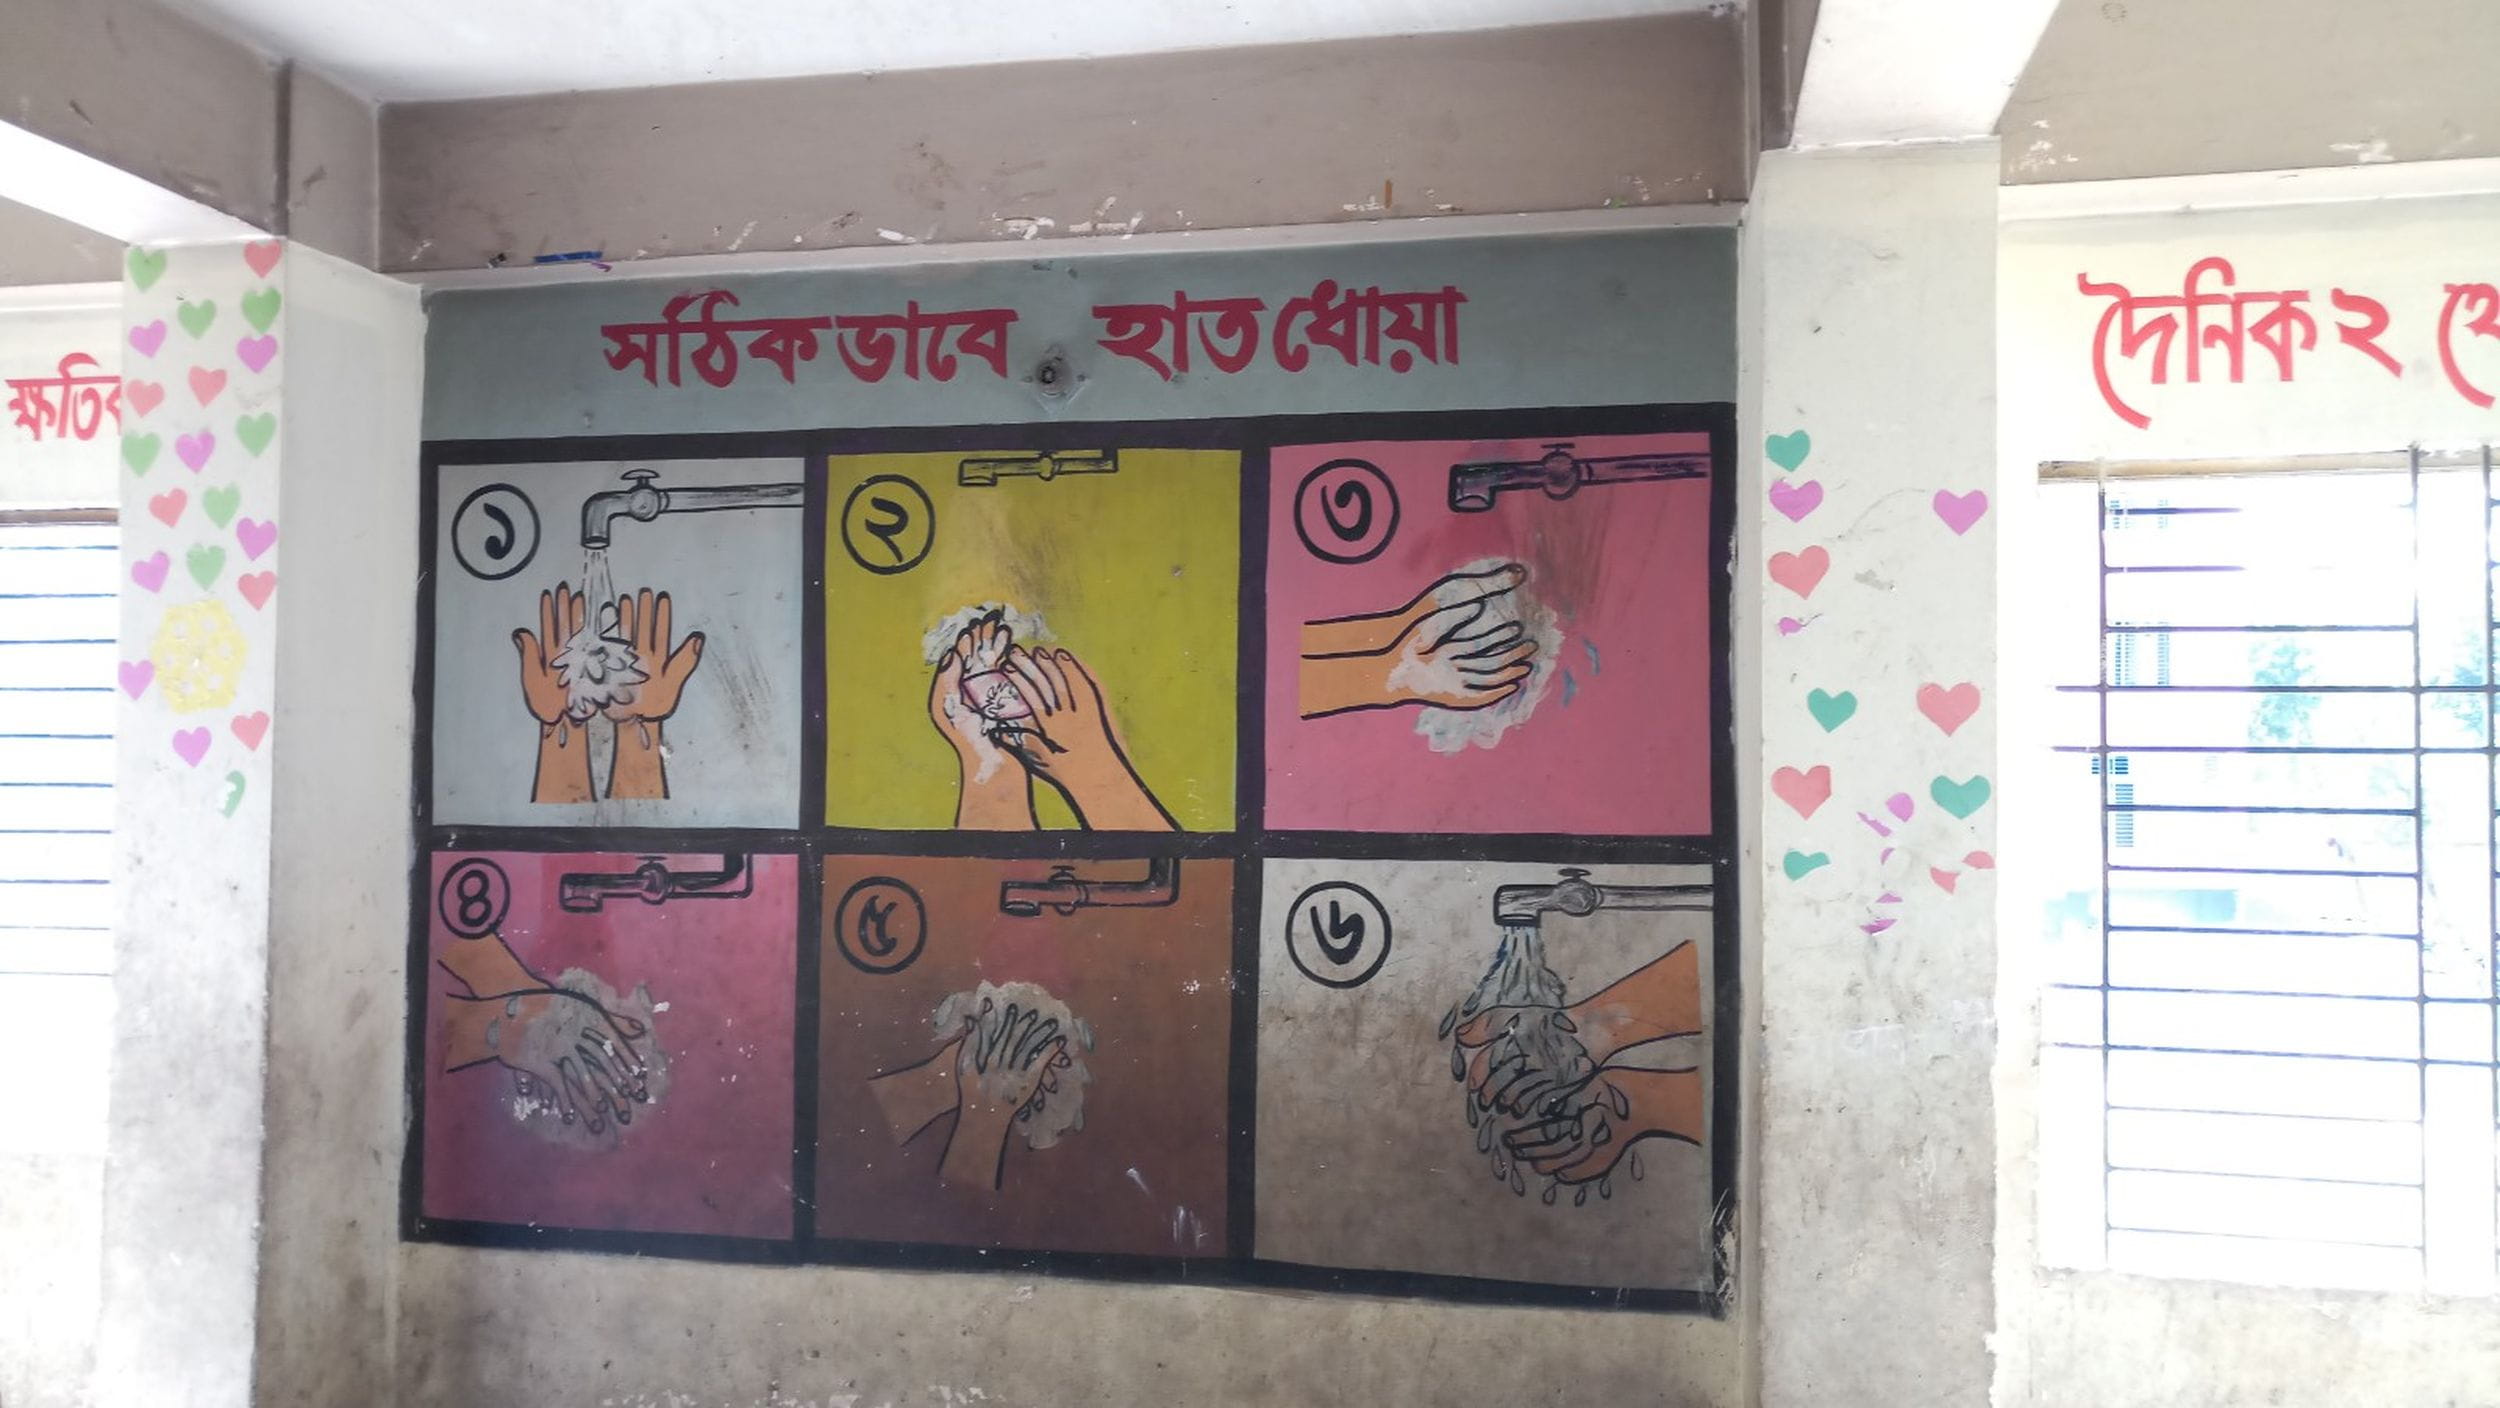 Instruktionen an der Wand in einem Heim in Bangladesch, wie man sich richtig die Hände wäscht. (Quelle: Katrin Weidemann)